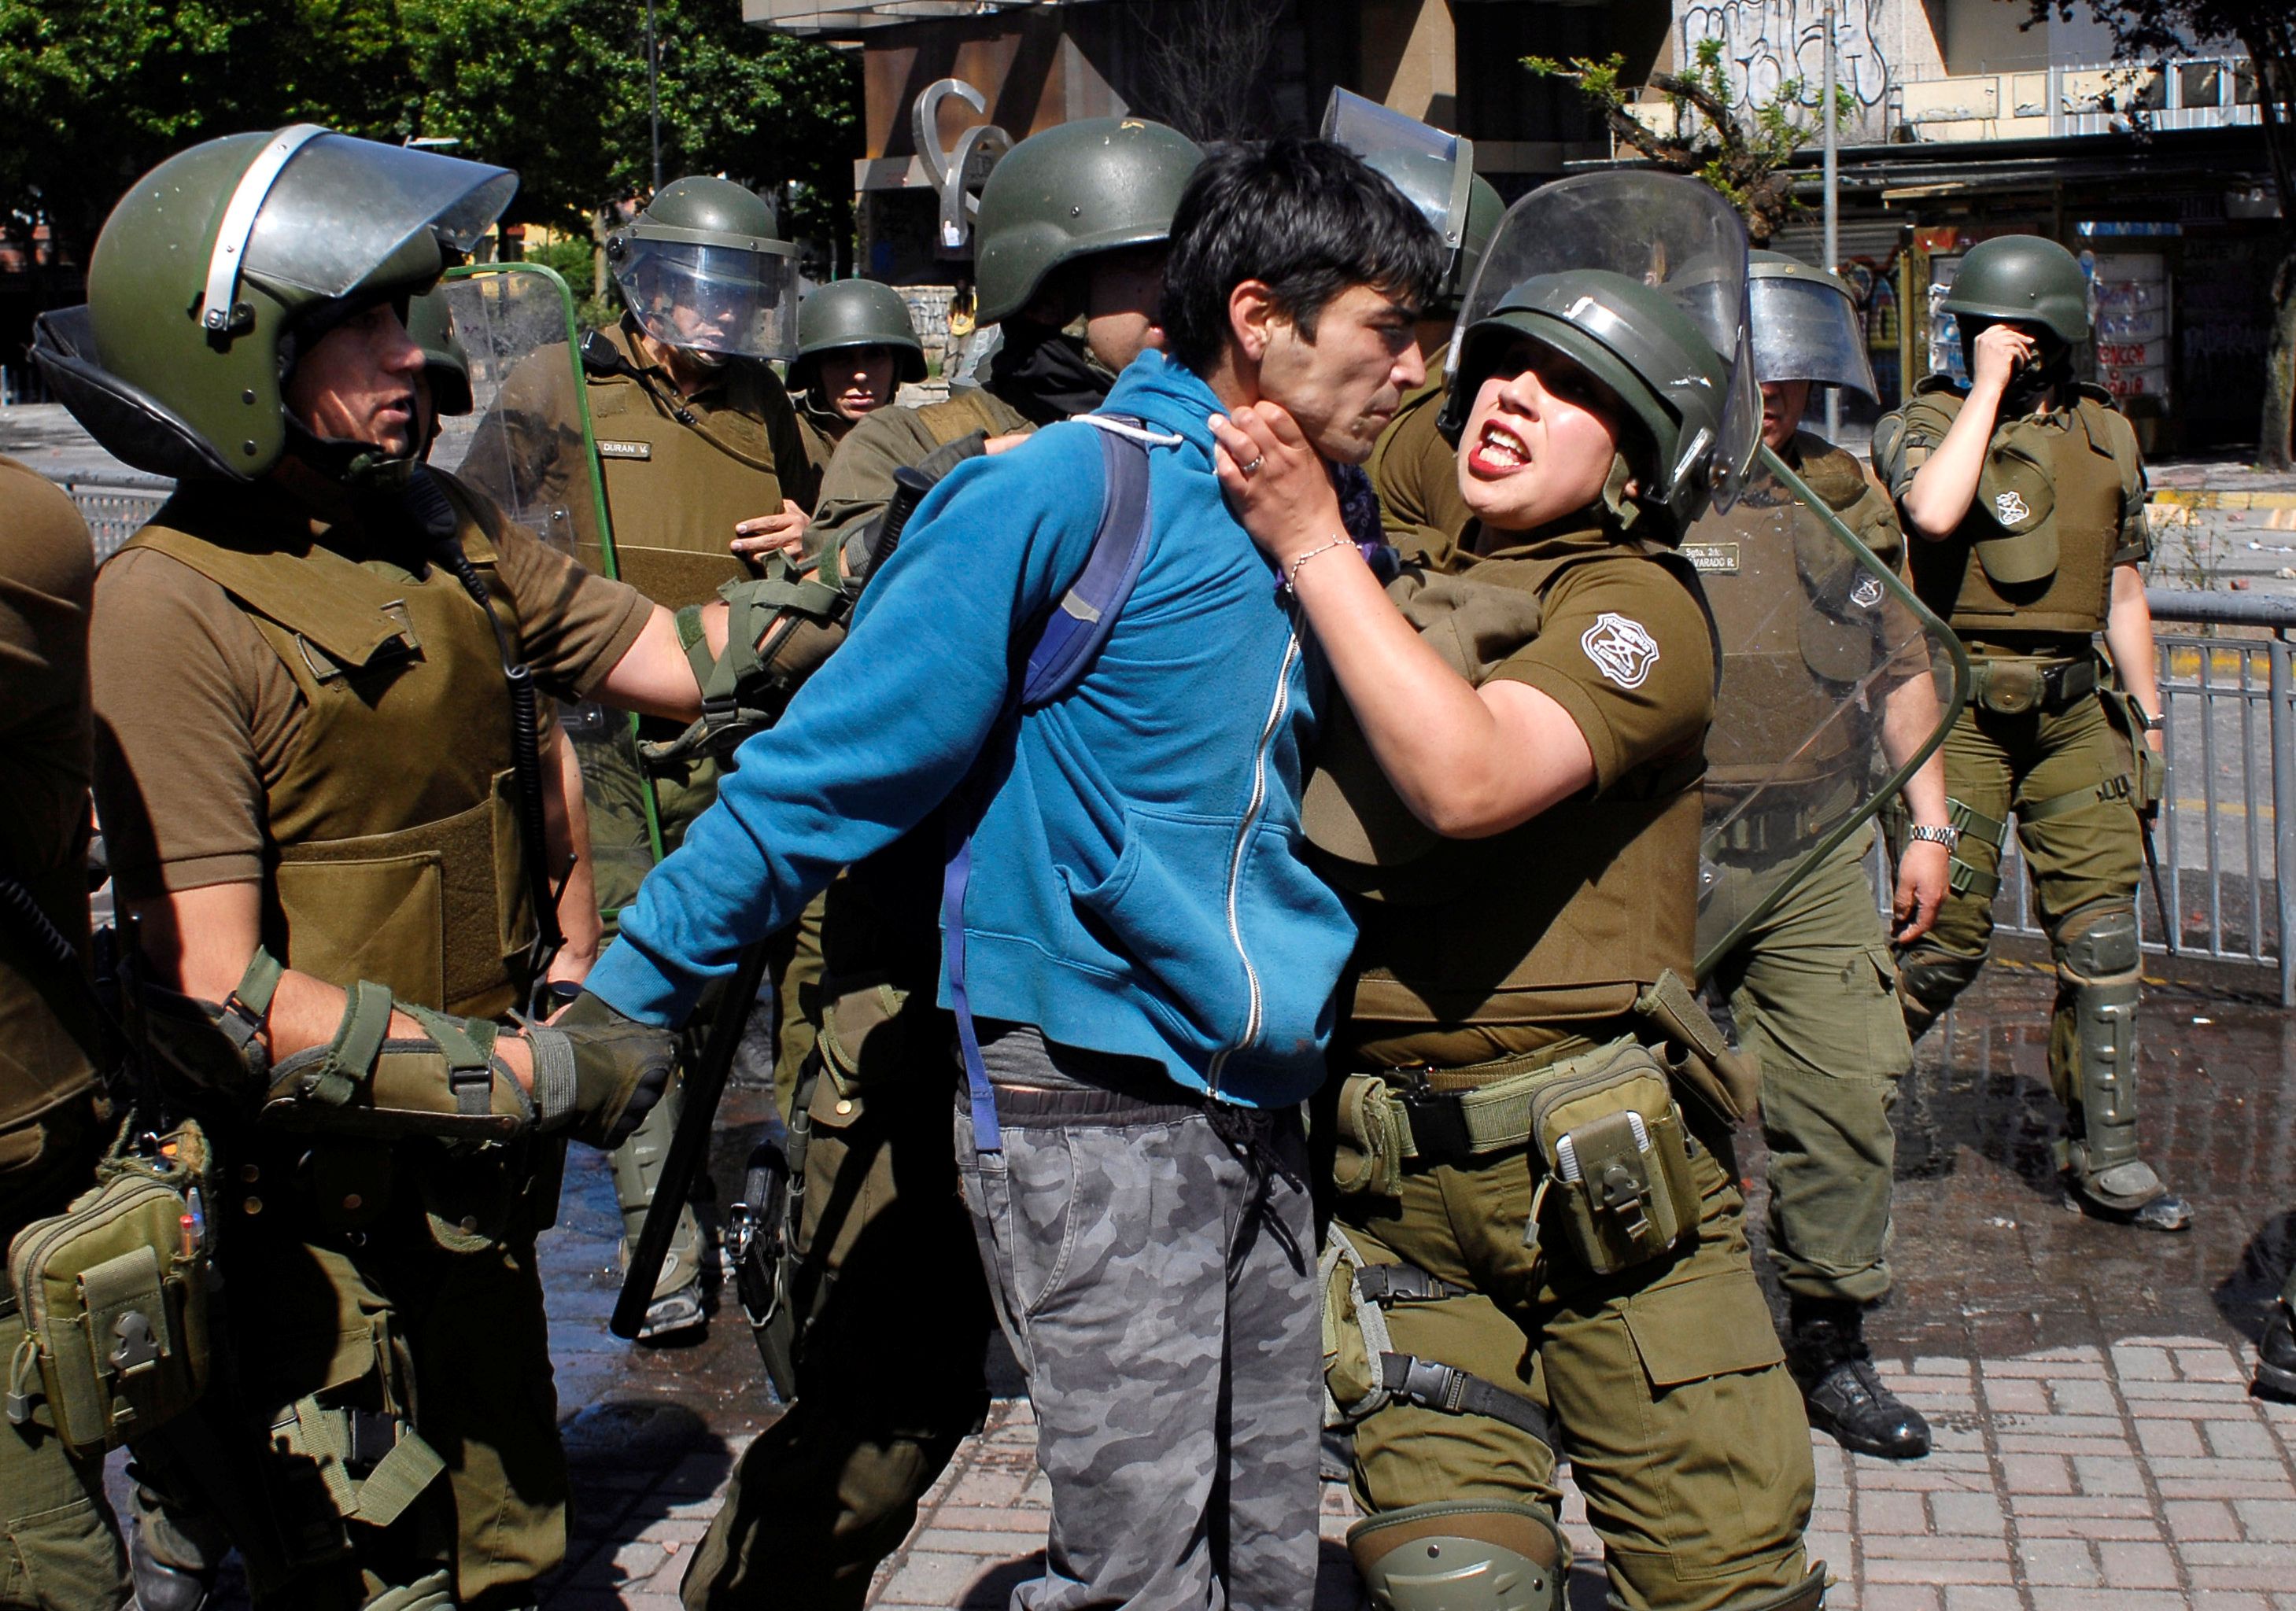 El uso excesivo de las fuerzas de seguridad en las protestas sociales ha dejado al menos 20 muertos, 11.500 heridos, 20.000 detenidos y otras abusos en lo manifestantes chilenos.